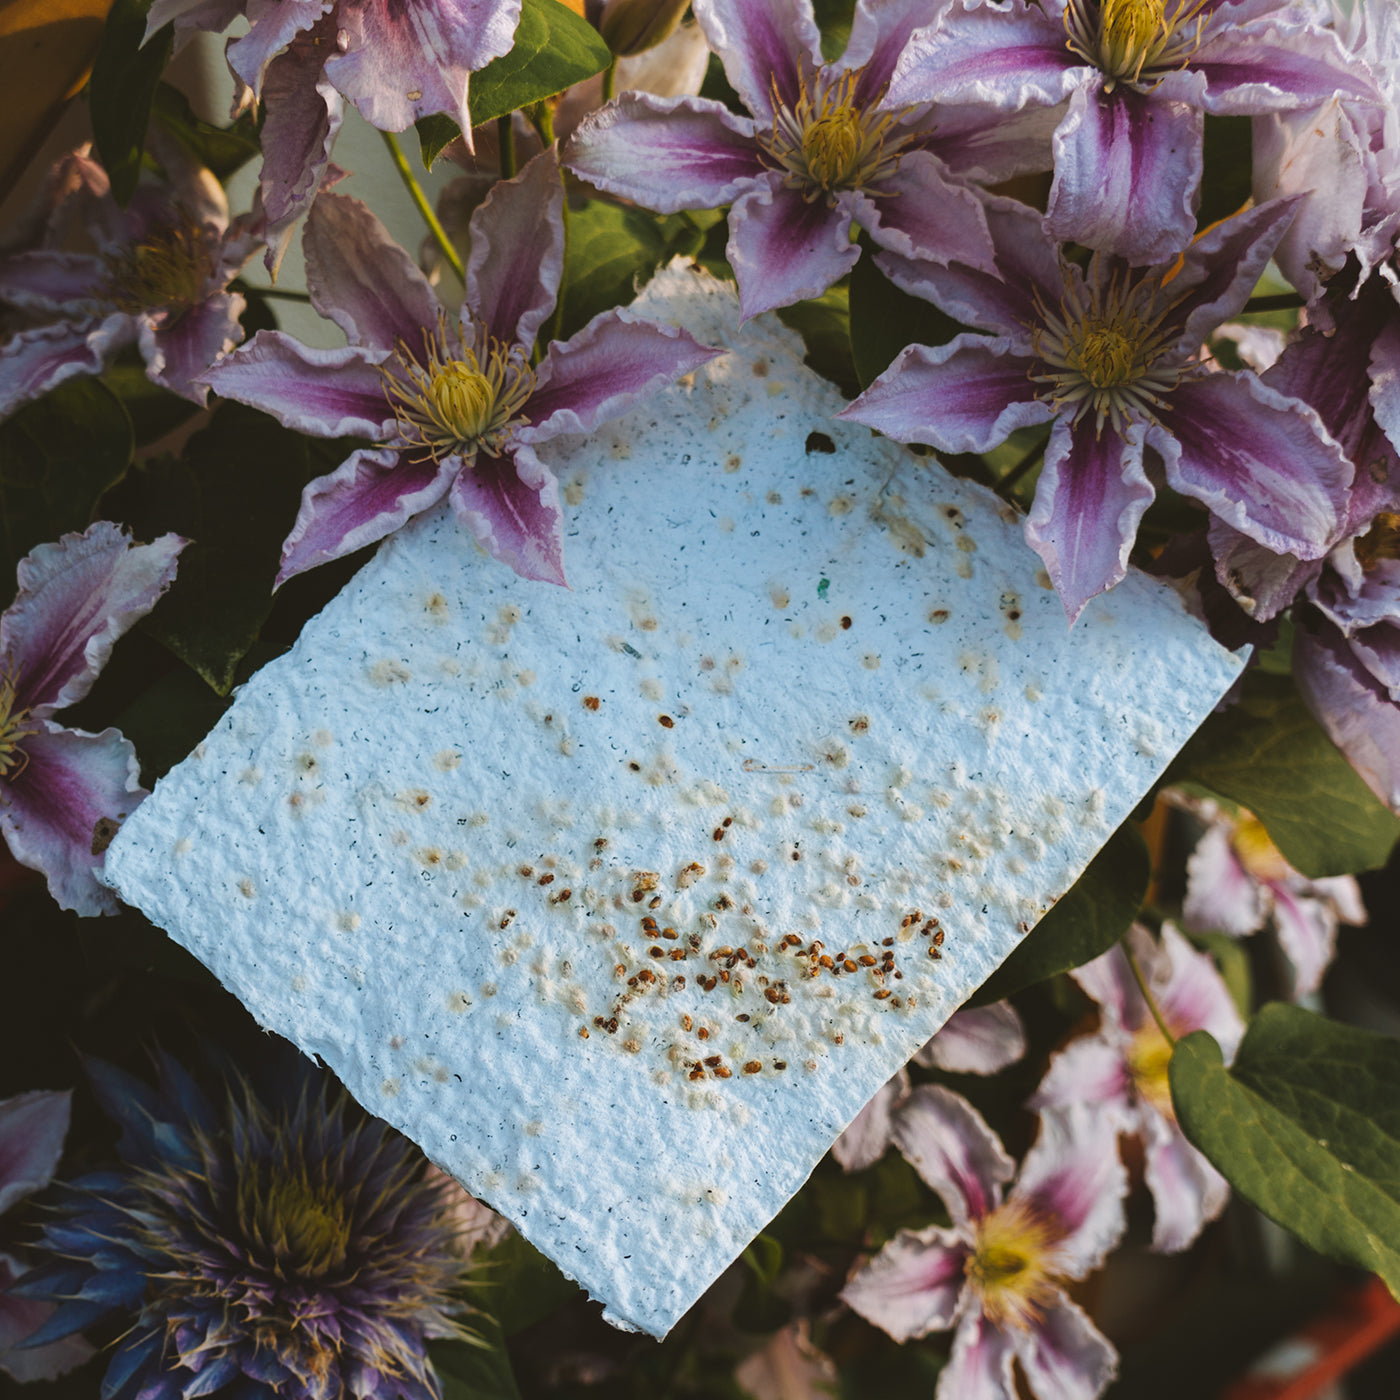 Cartolina seminabile con semi di fiori selvatici